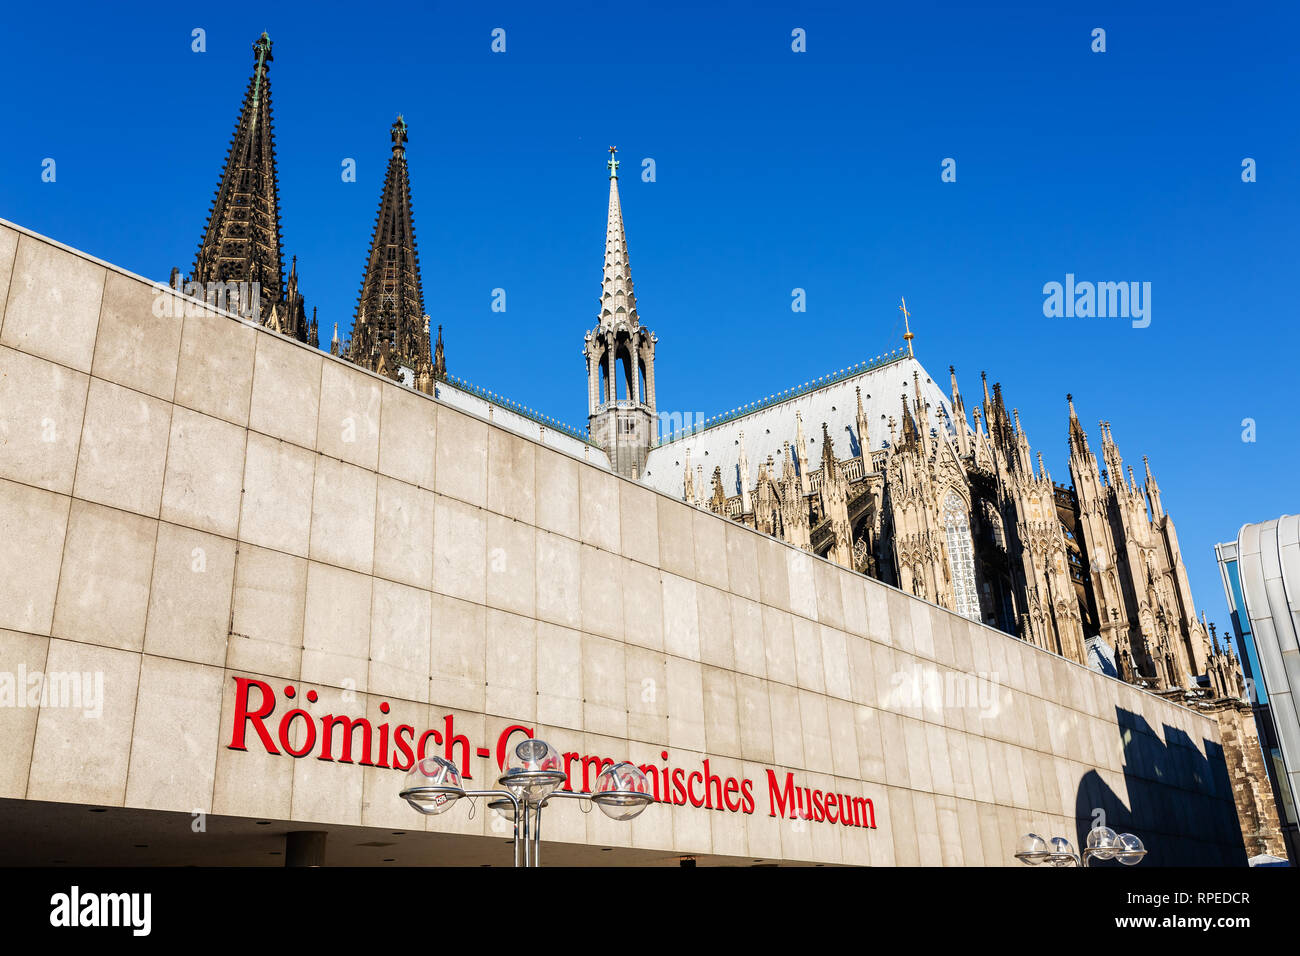 Cologne, Allemagne - 16 Février 2019 : musée romain-germanique de Cologne. C'est un musée archéologique avec une grande collection d'artefacts romains Banque D'Images